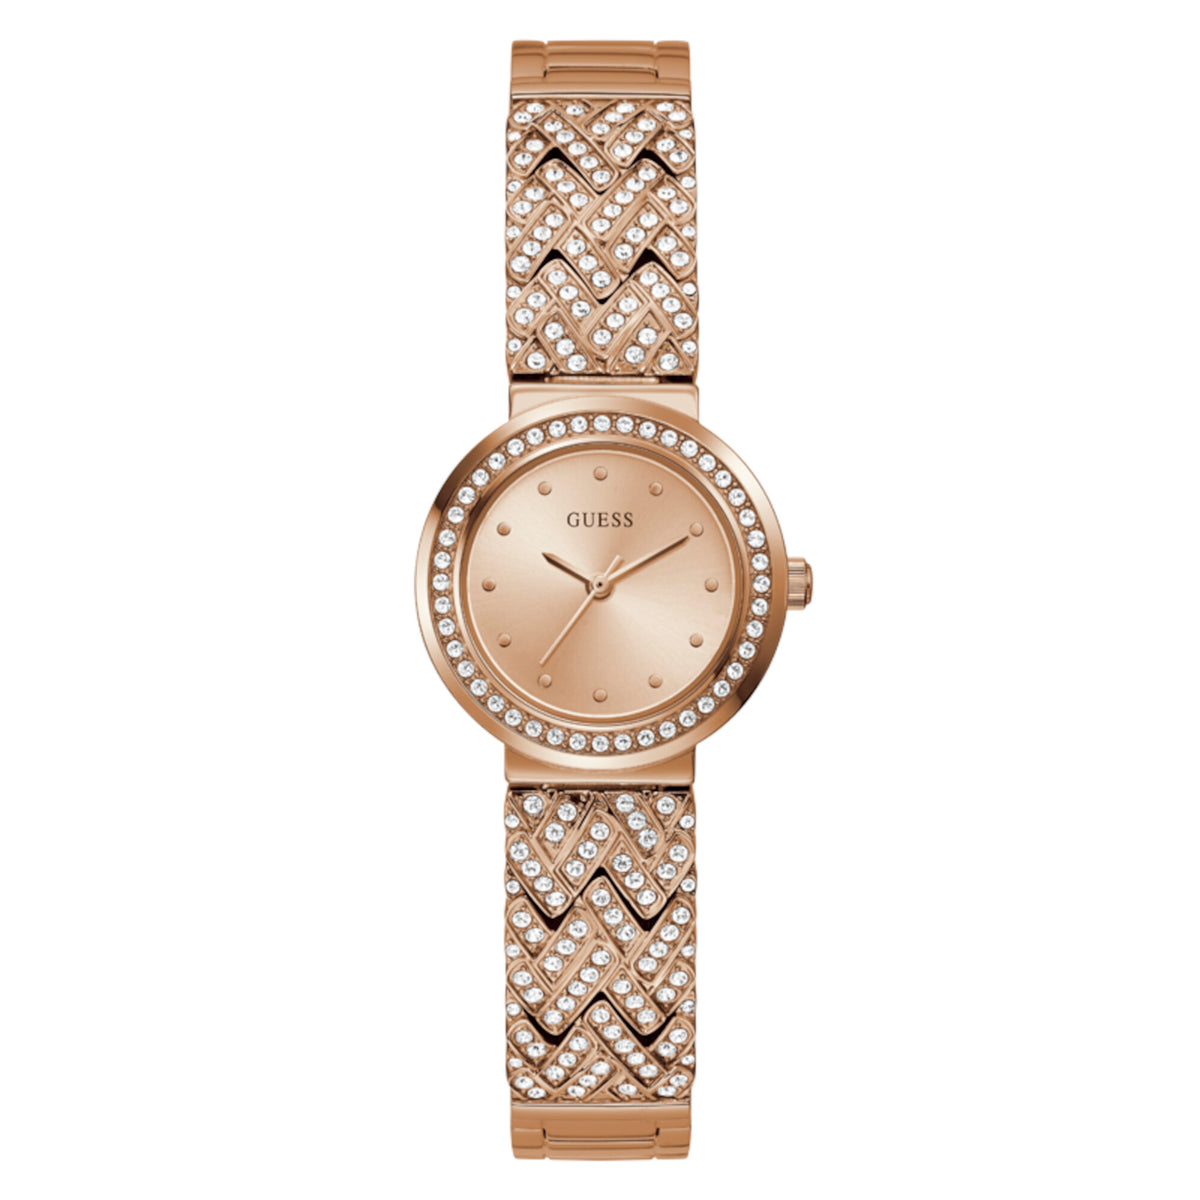 Reloj Guess de mujer Treasure color oro rosa